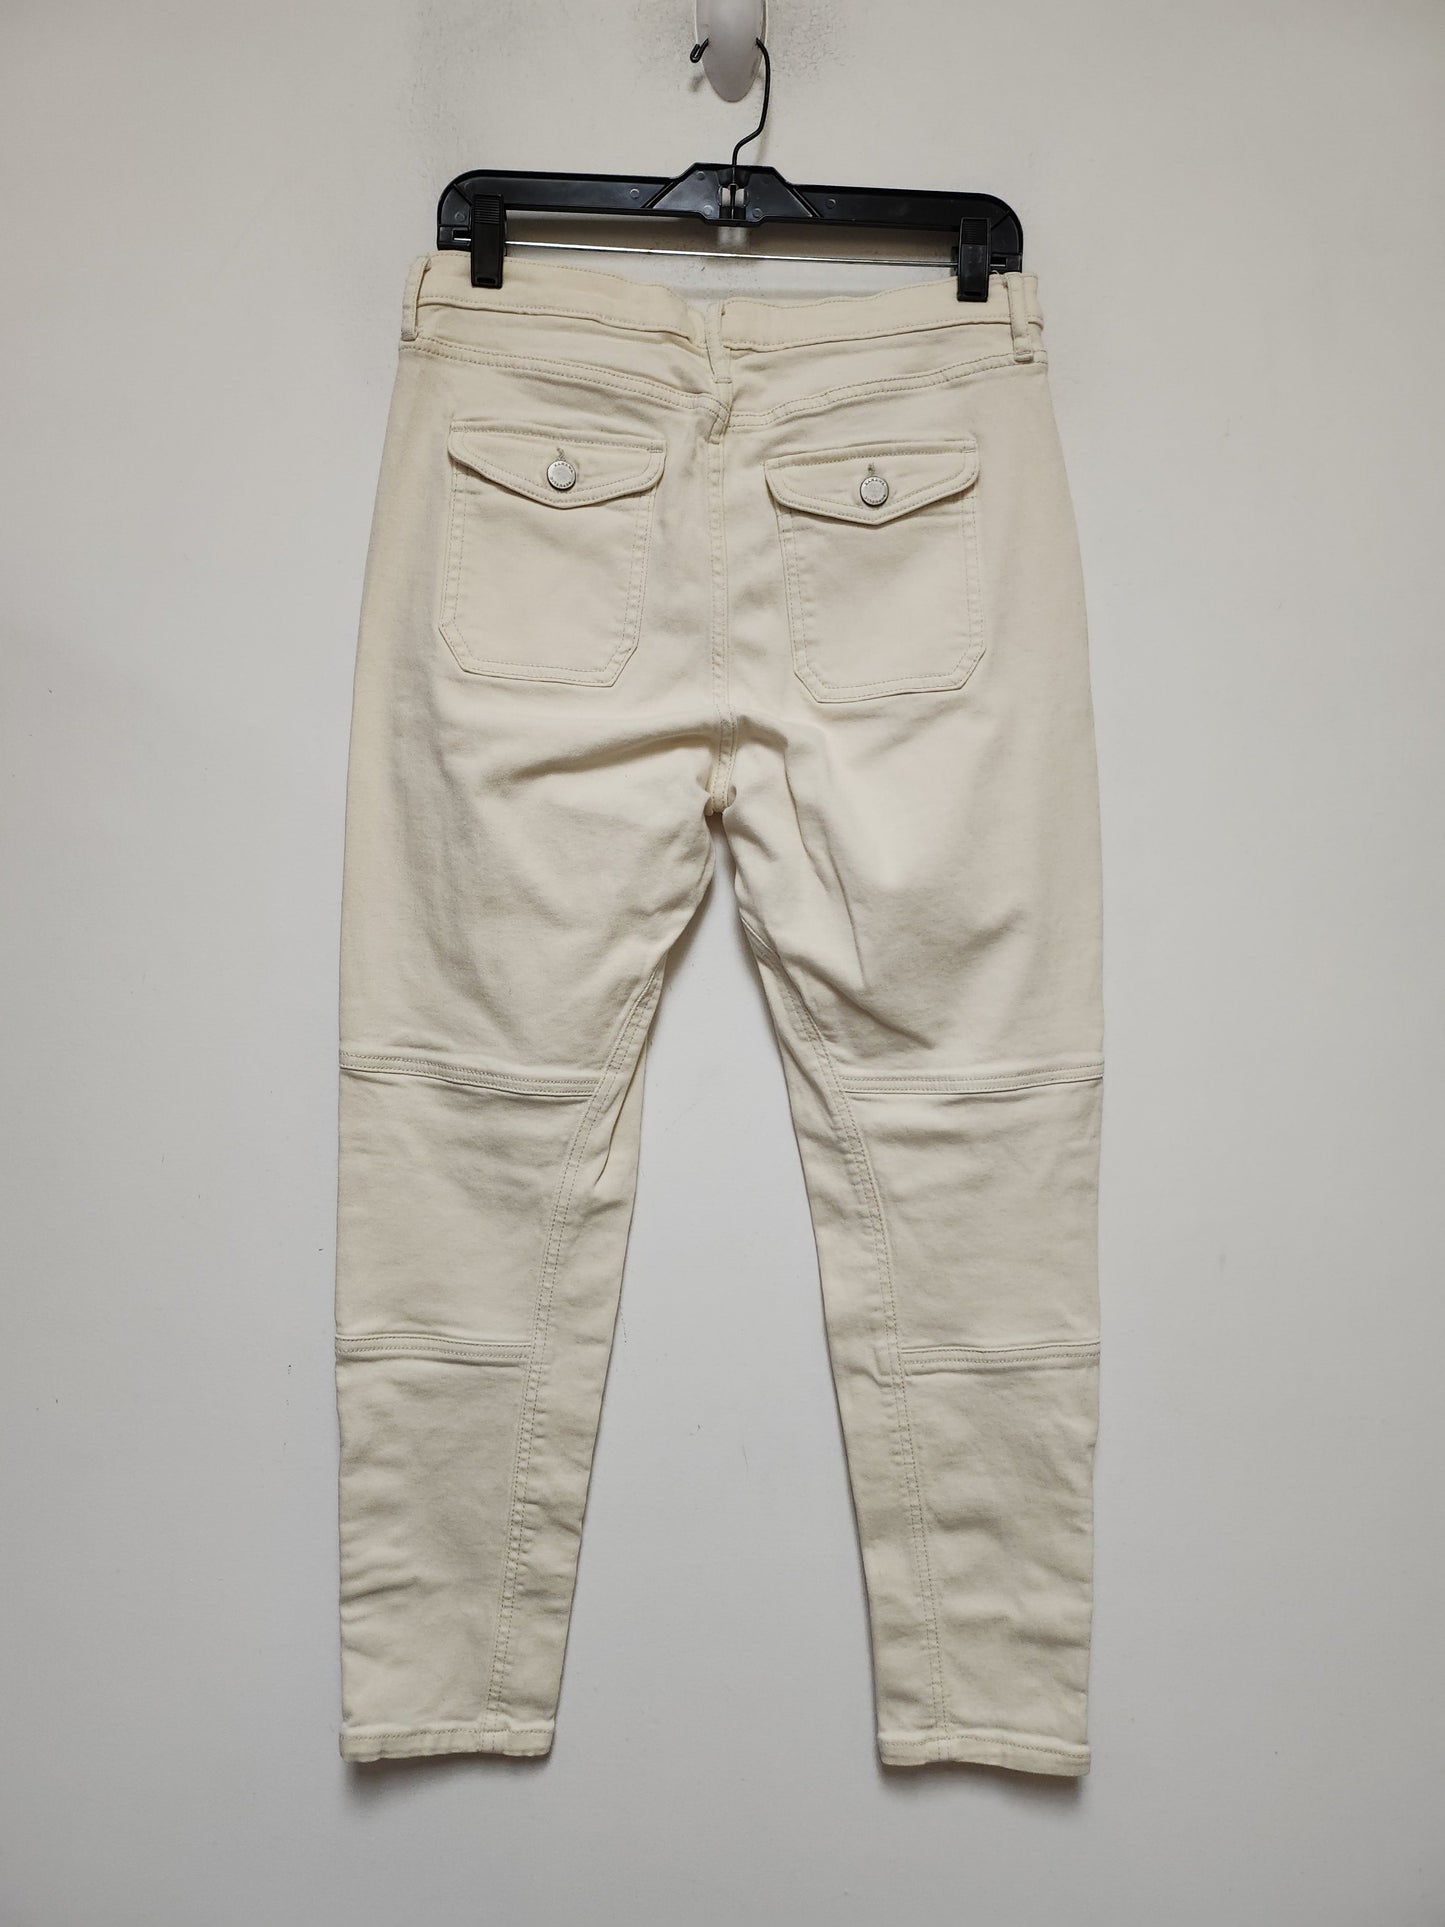 Tan Denim Jeans Cropped Banana Republic, Size 8